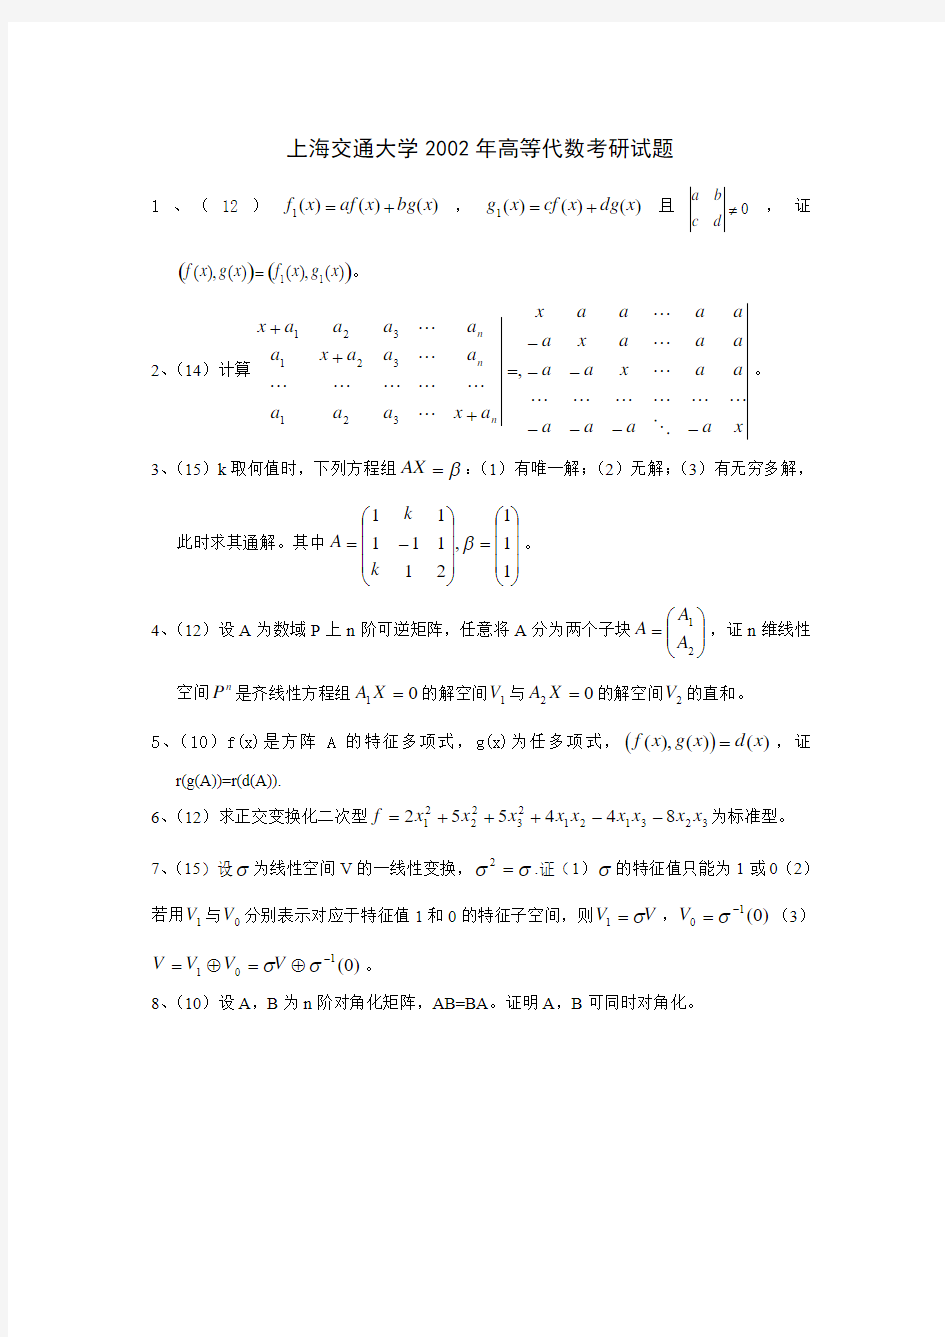 上海交通大学2002年高等代数考研试题